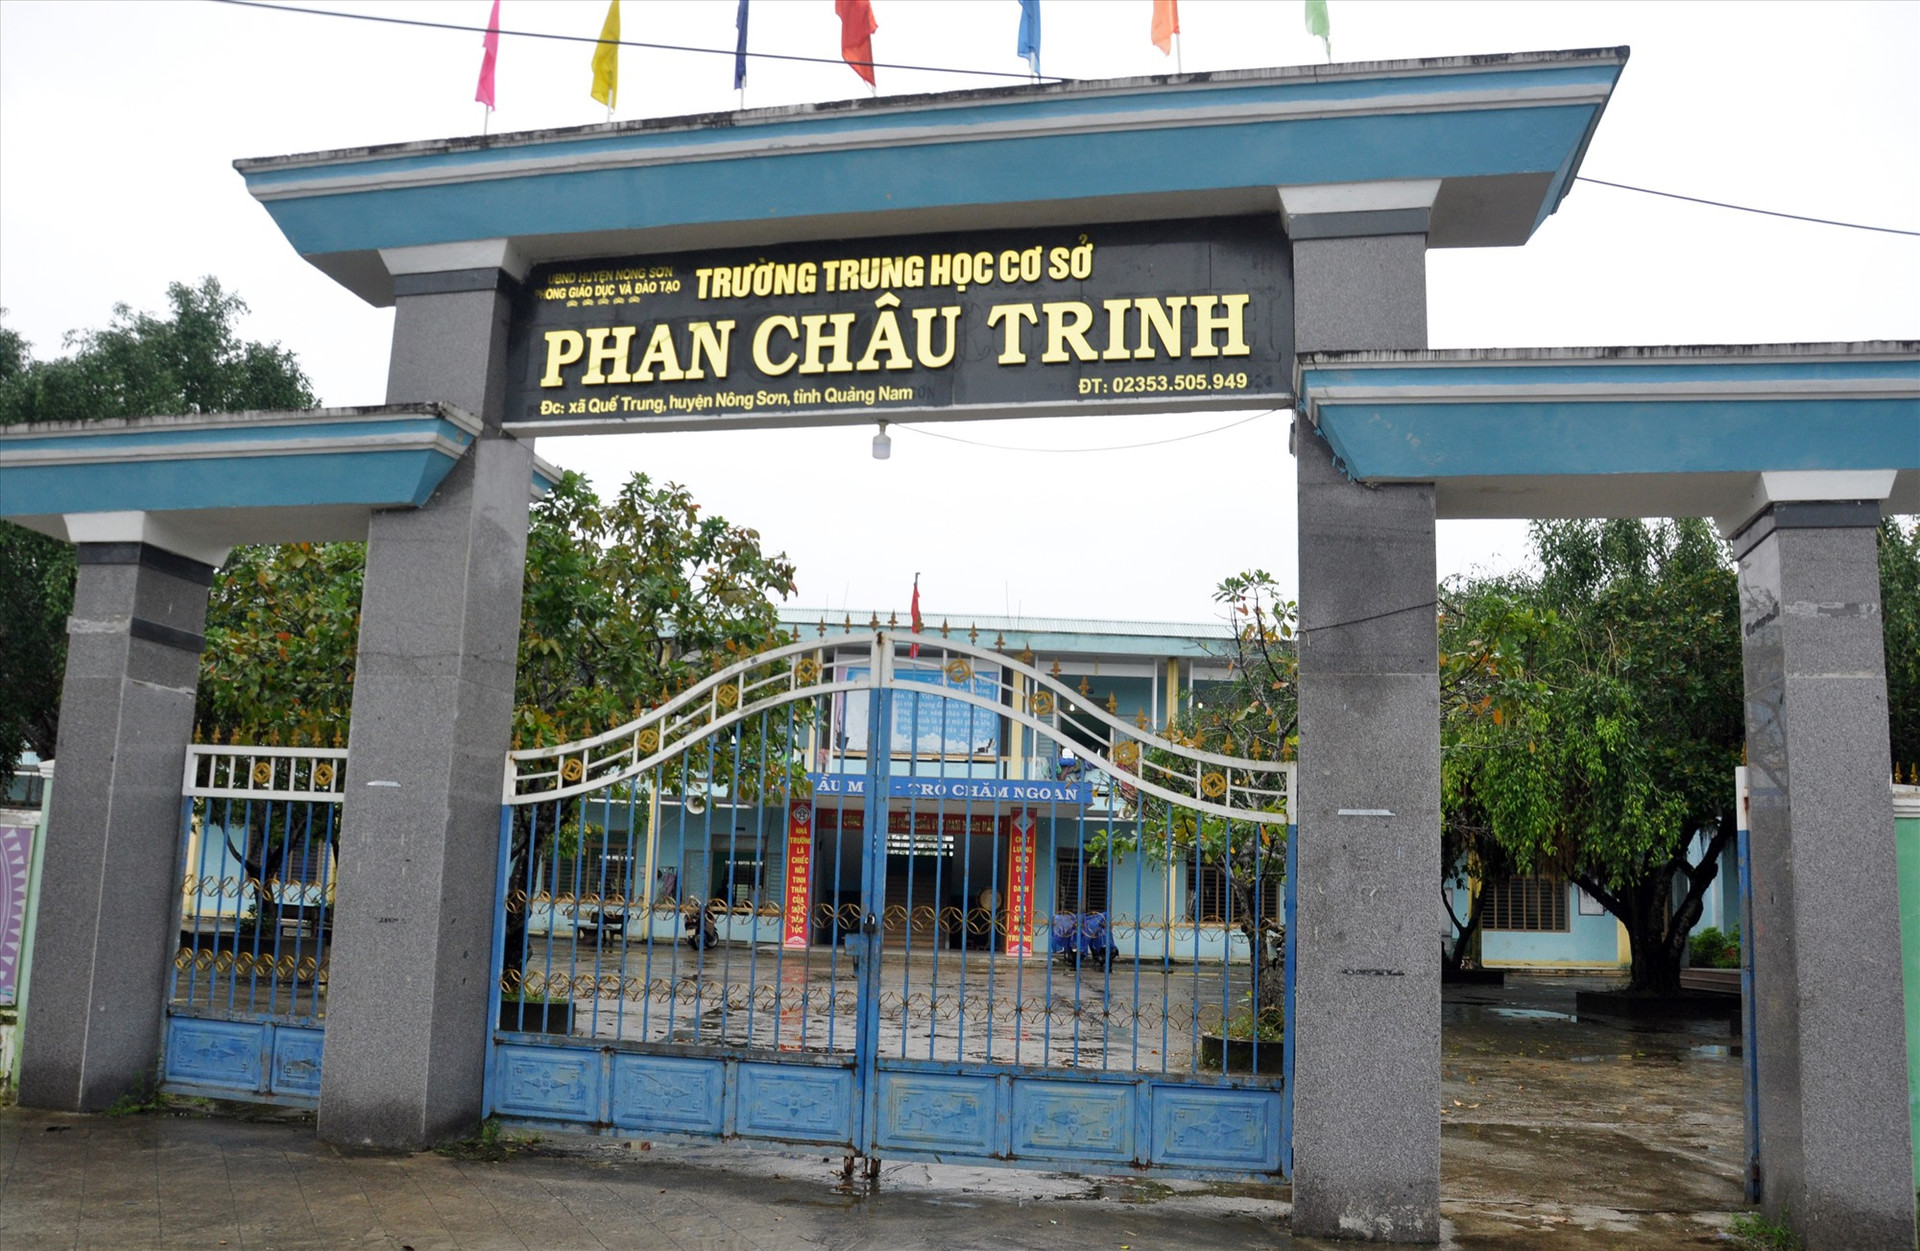 Trường THCS Phan Châu Trinh - nơi cô Ngô Thị Liên Hòa giảng dạy. Ảnh: X.P